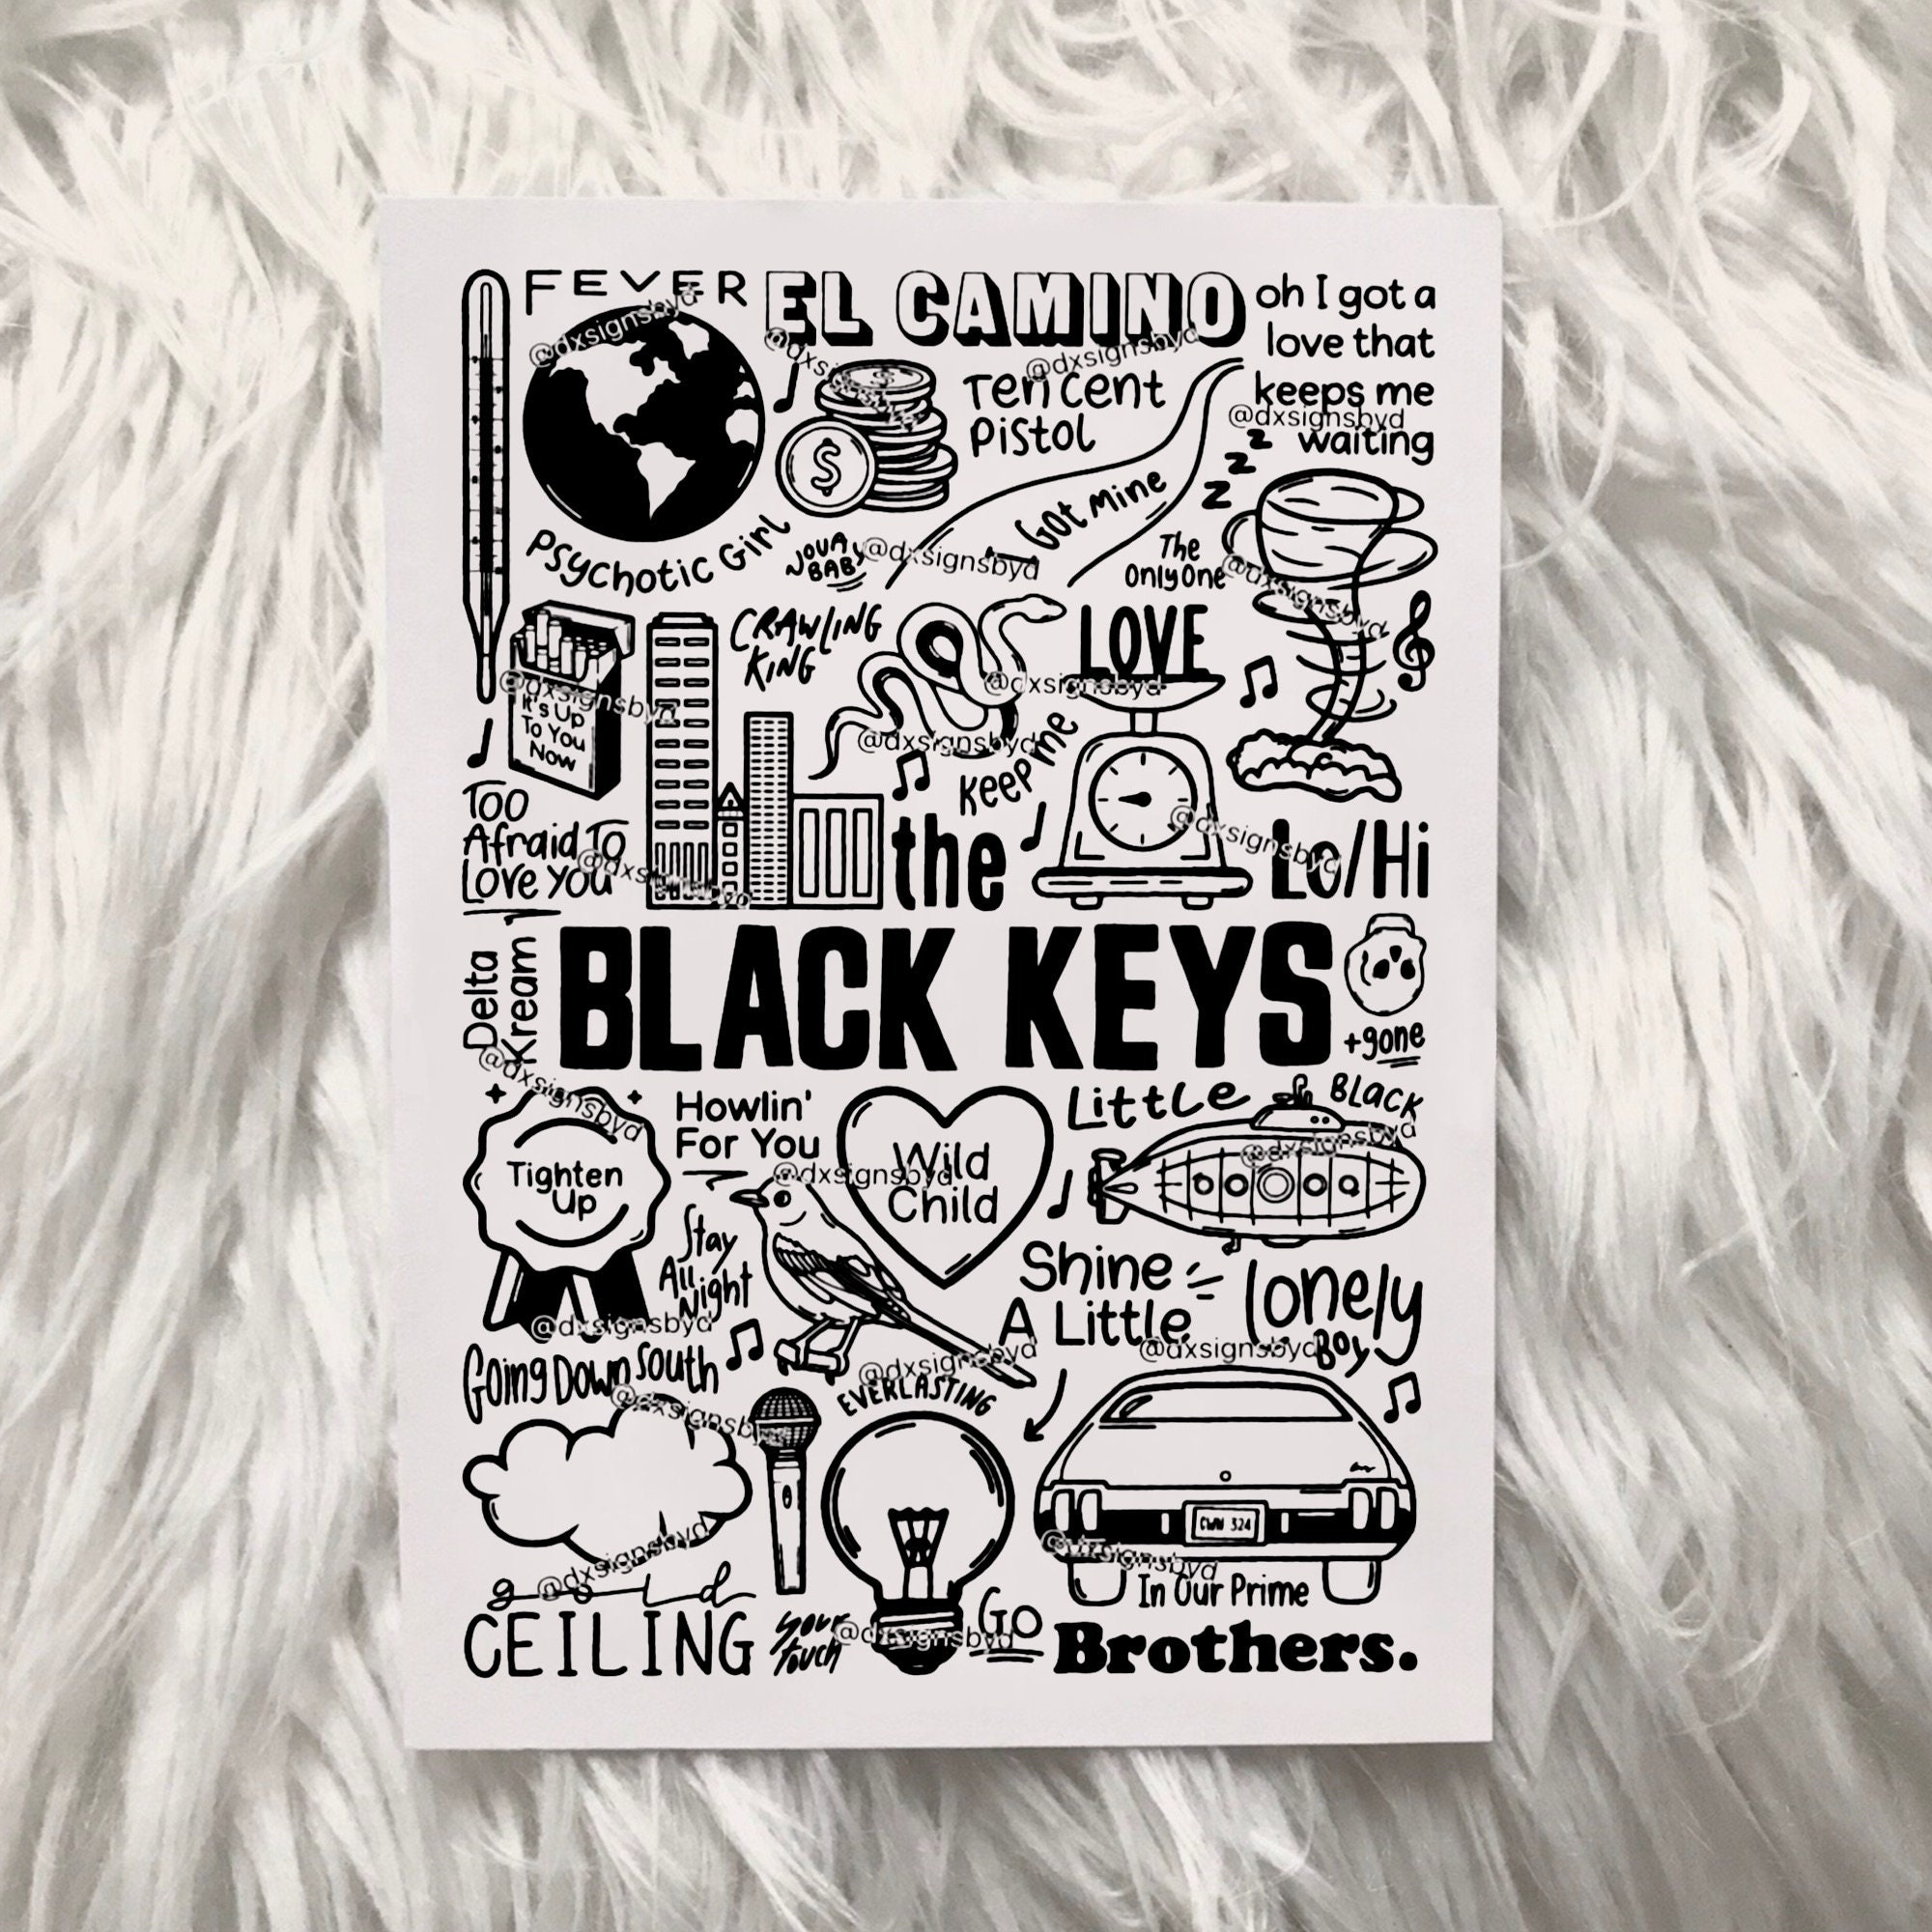 The Black Keys poster